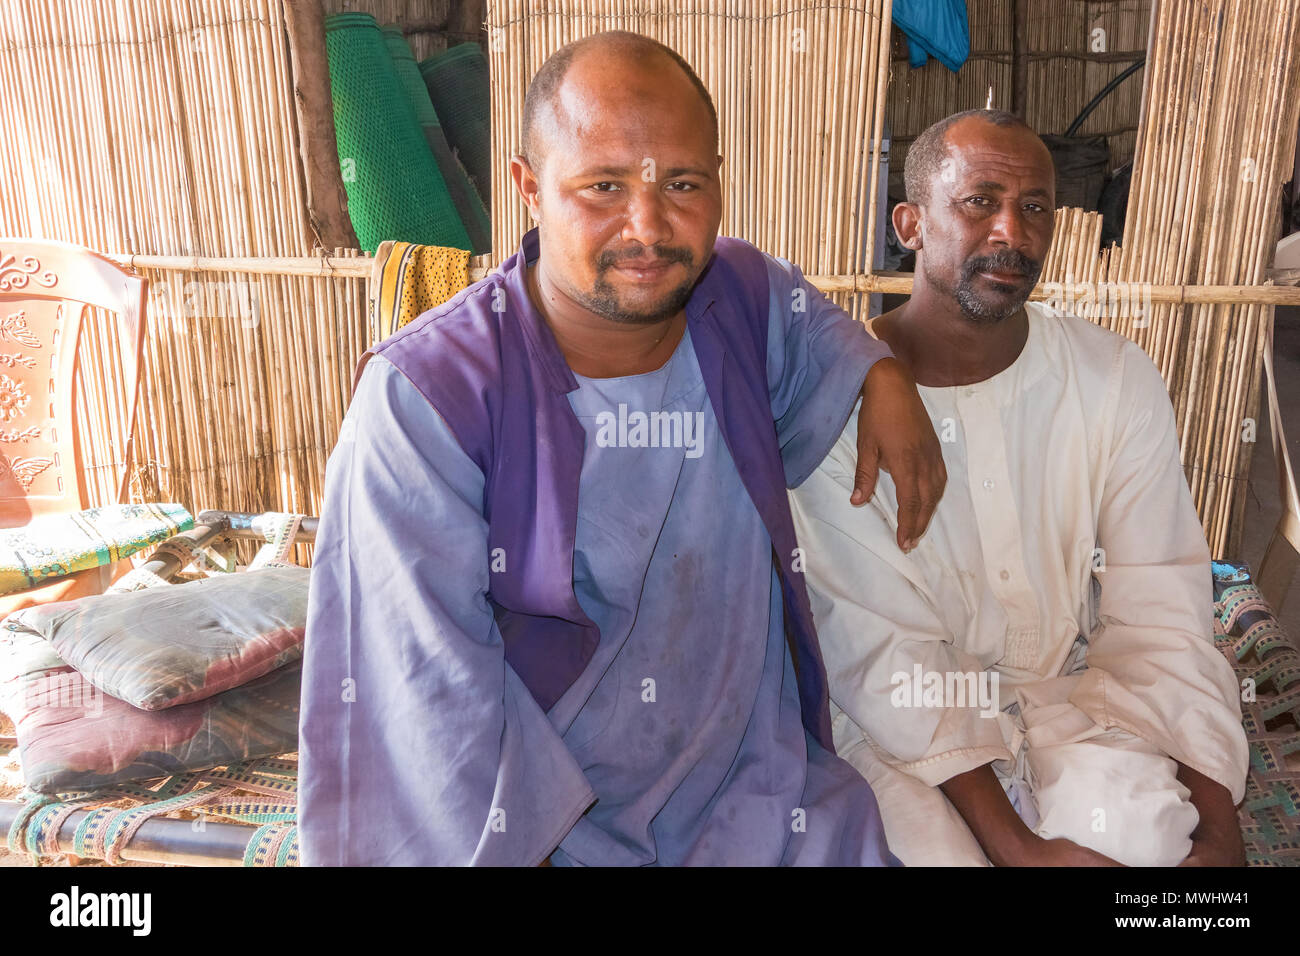 Khartum, Sudan - Januar 31, 2015: Zwei Männer in der Nähe von bis Farbe portrait. Bild in der Nähe von Khartum im Sudan. Stockfoto